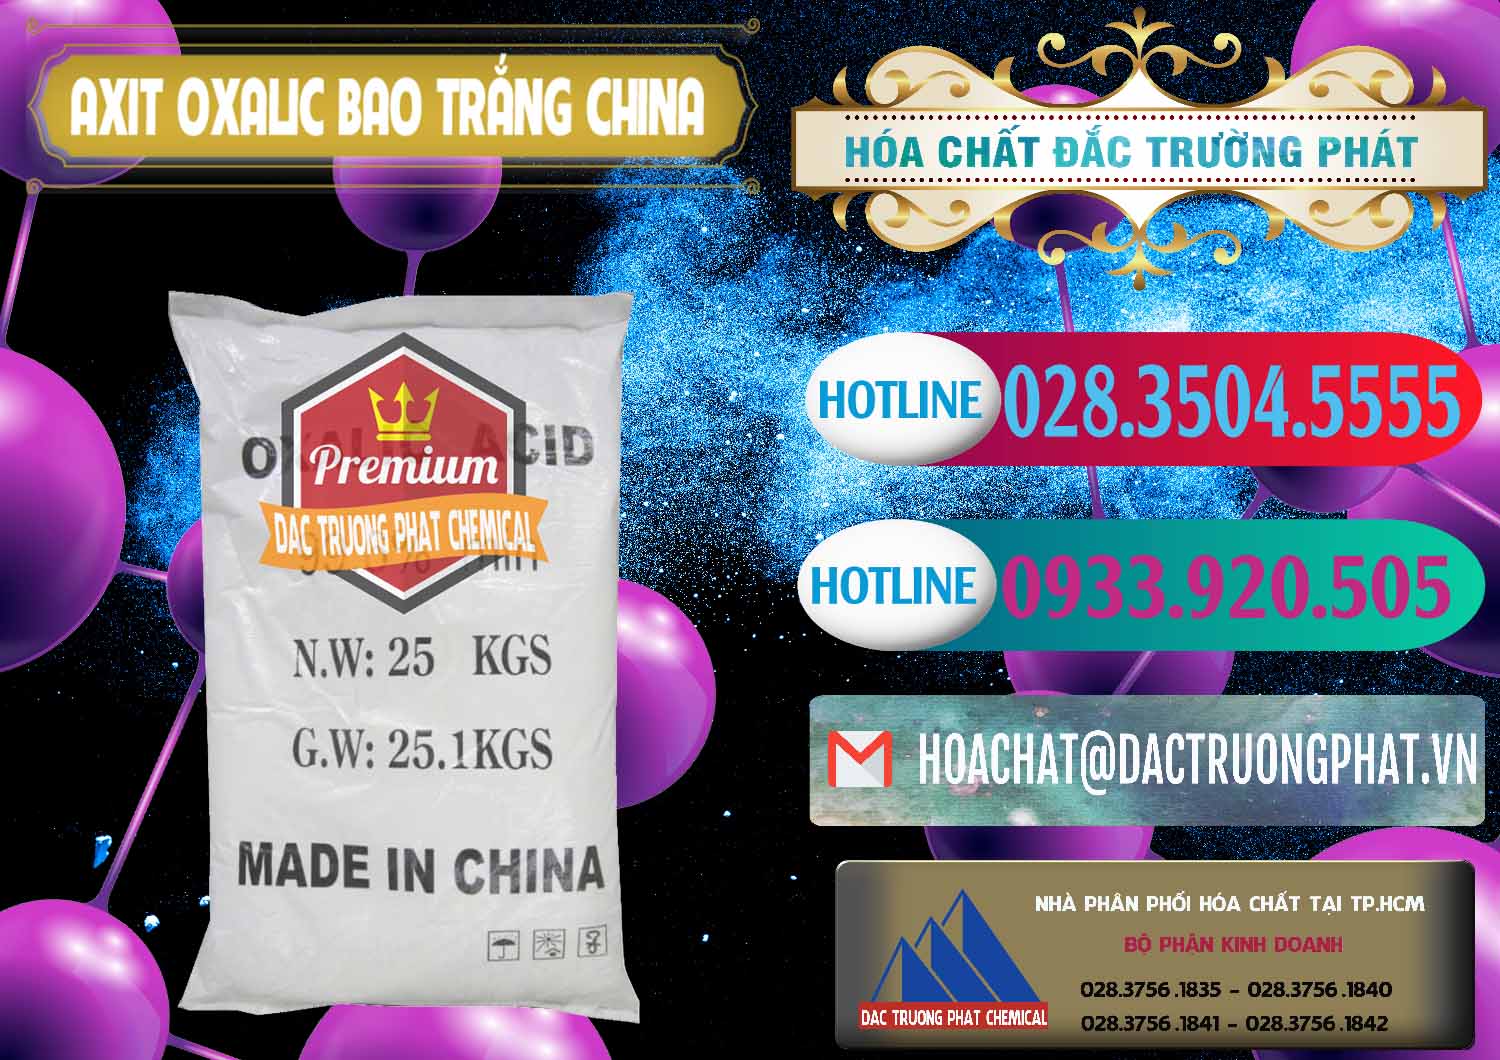 Chuyên kinh doanh và bán Acid Oxalic – Axit Oxalic 99.6% Bao Trắng Trung Quốc China - 0270 - Cty cung cấp - kinh doanh hóa chất tại TP.HCM - truongphat.vn